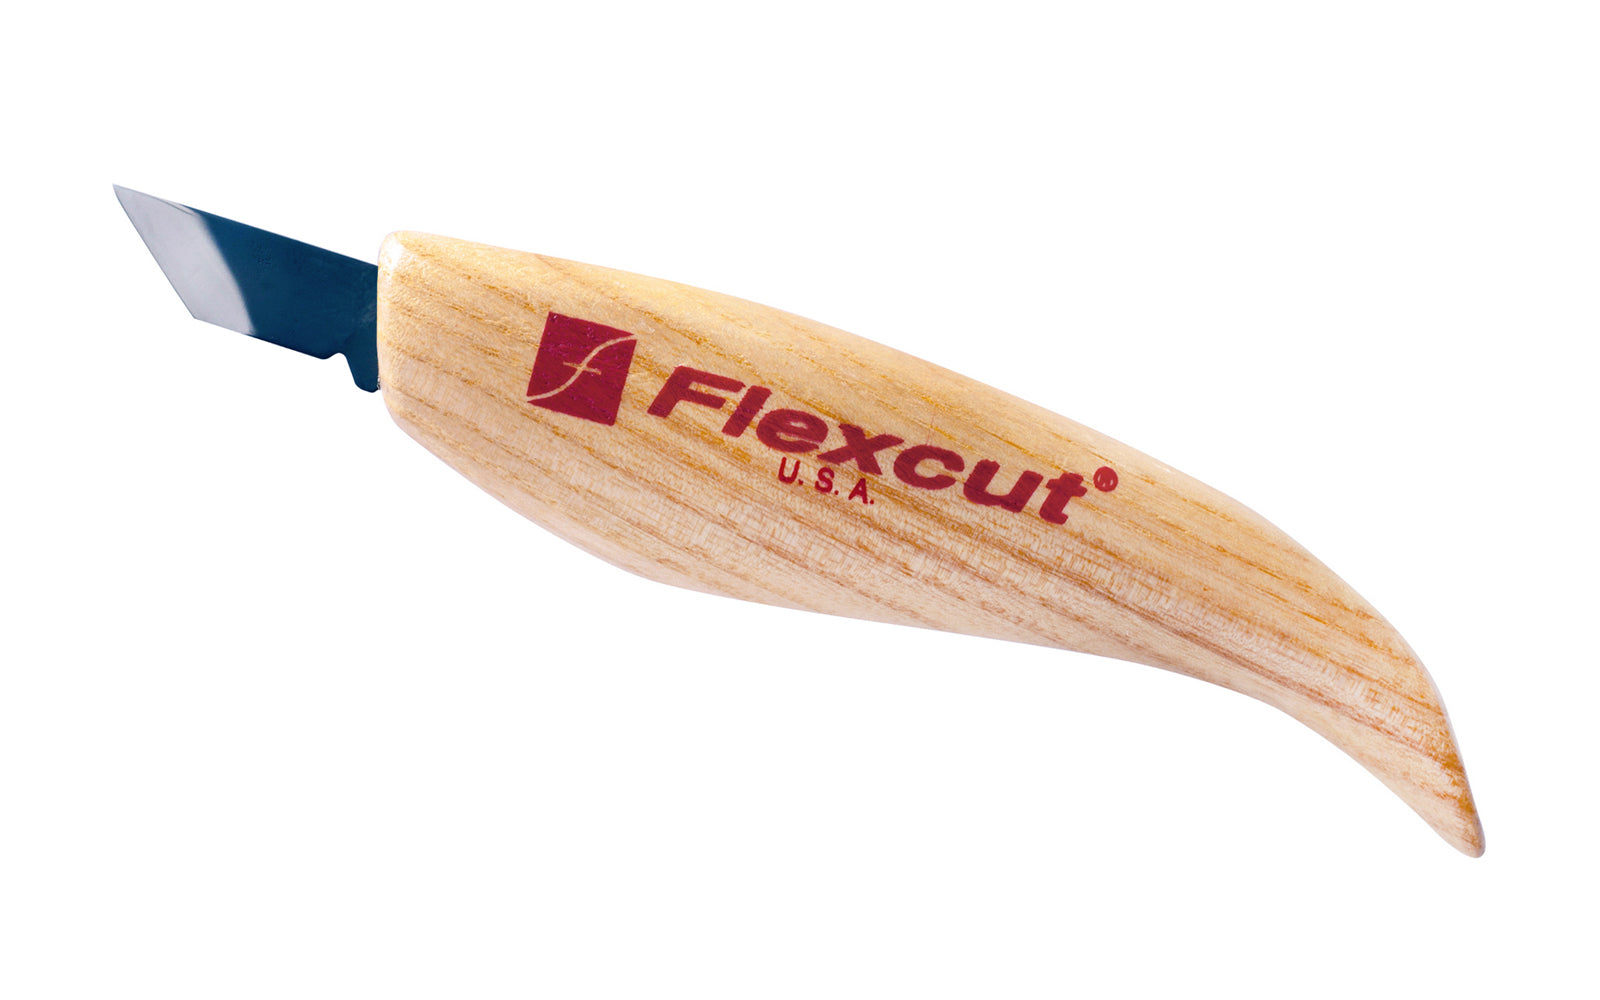 Flexcut KN11 Skew Knife